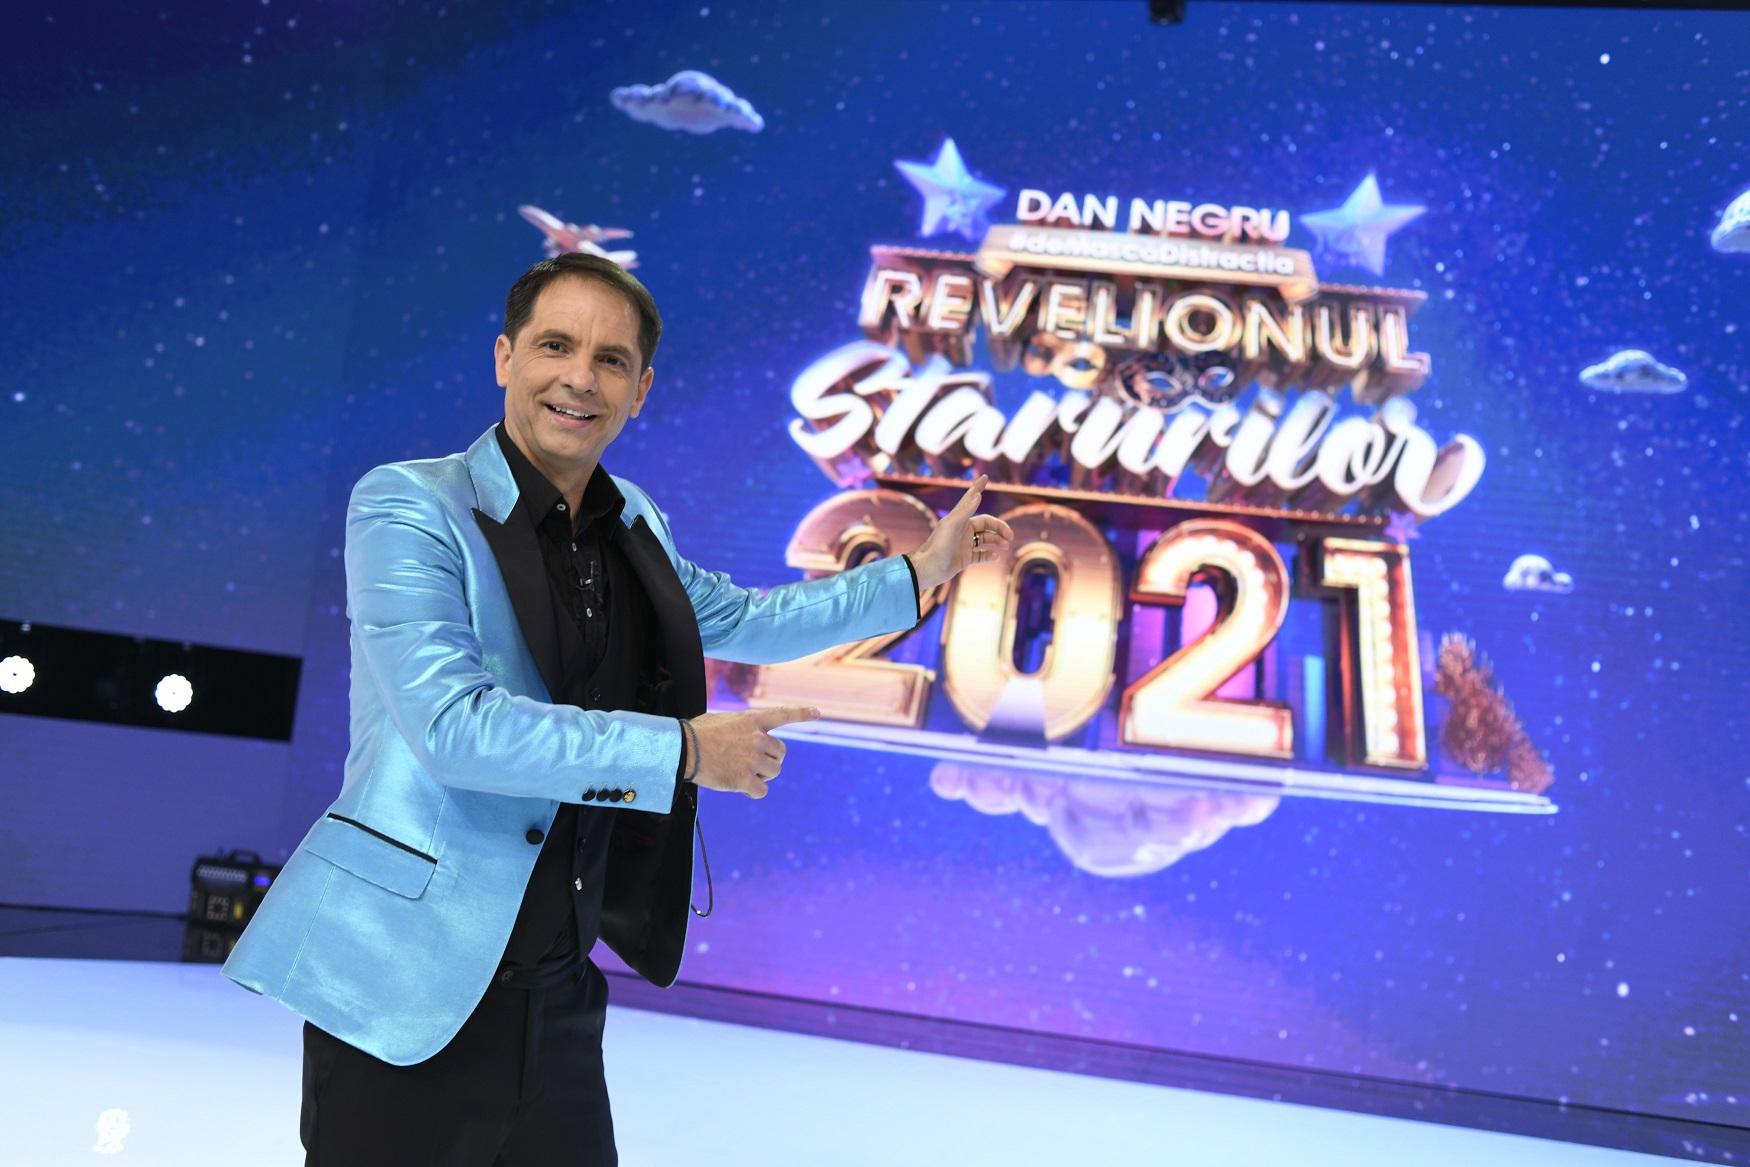 Dan Negru la Revelionul Starurilor 2021, la Antena 1